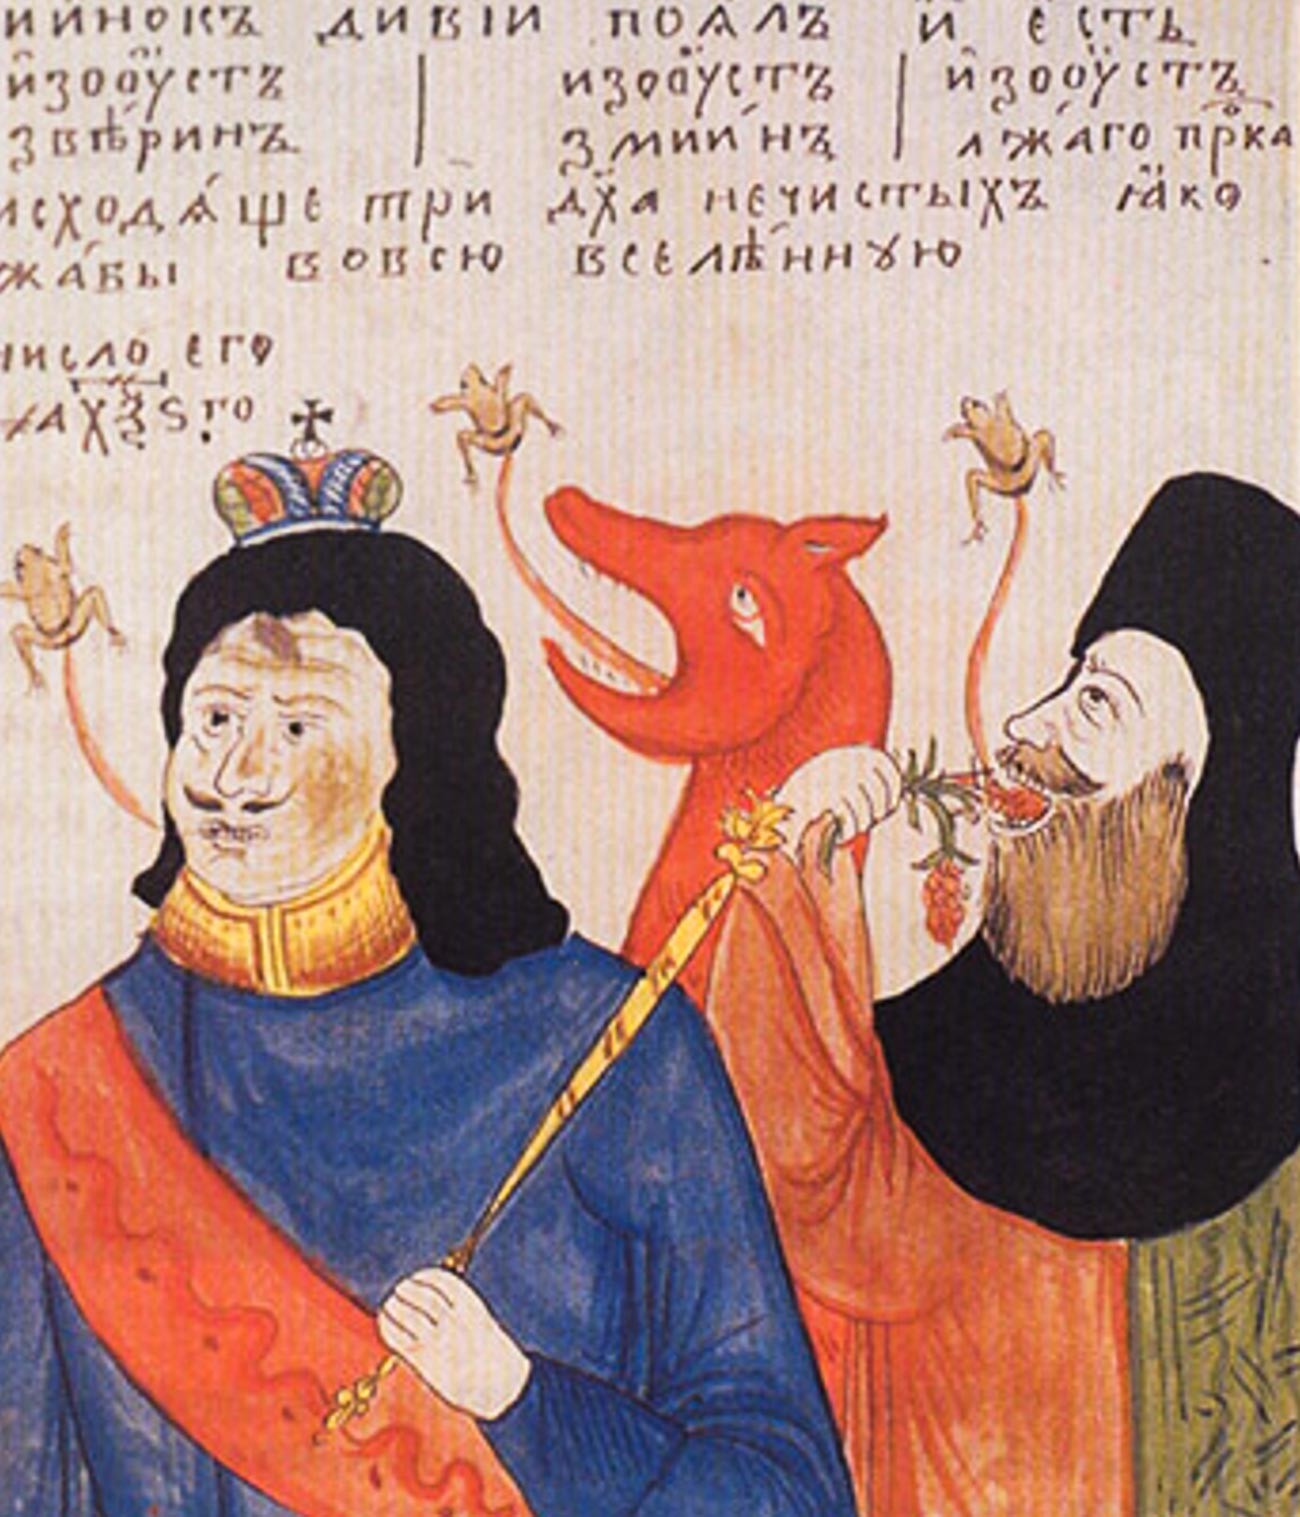 Una caricatura dei Vecchi Credenti che raffigura lo zar Pietro come l'Anticristo
